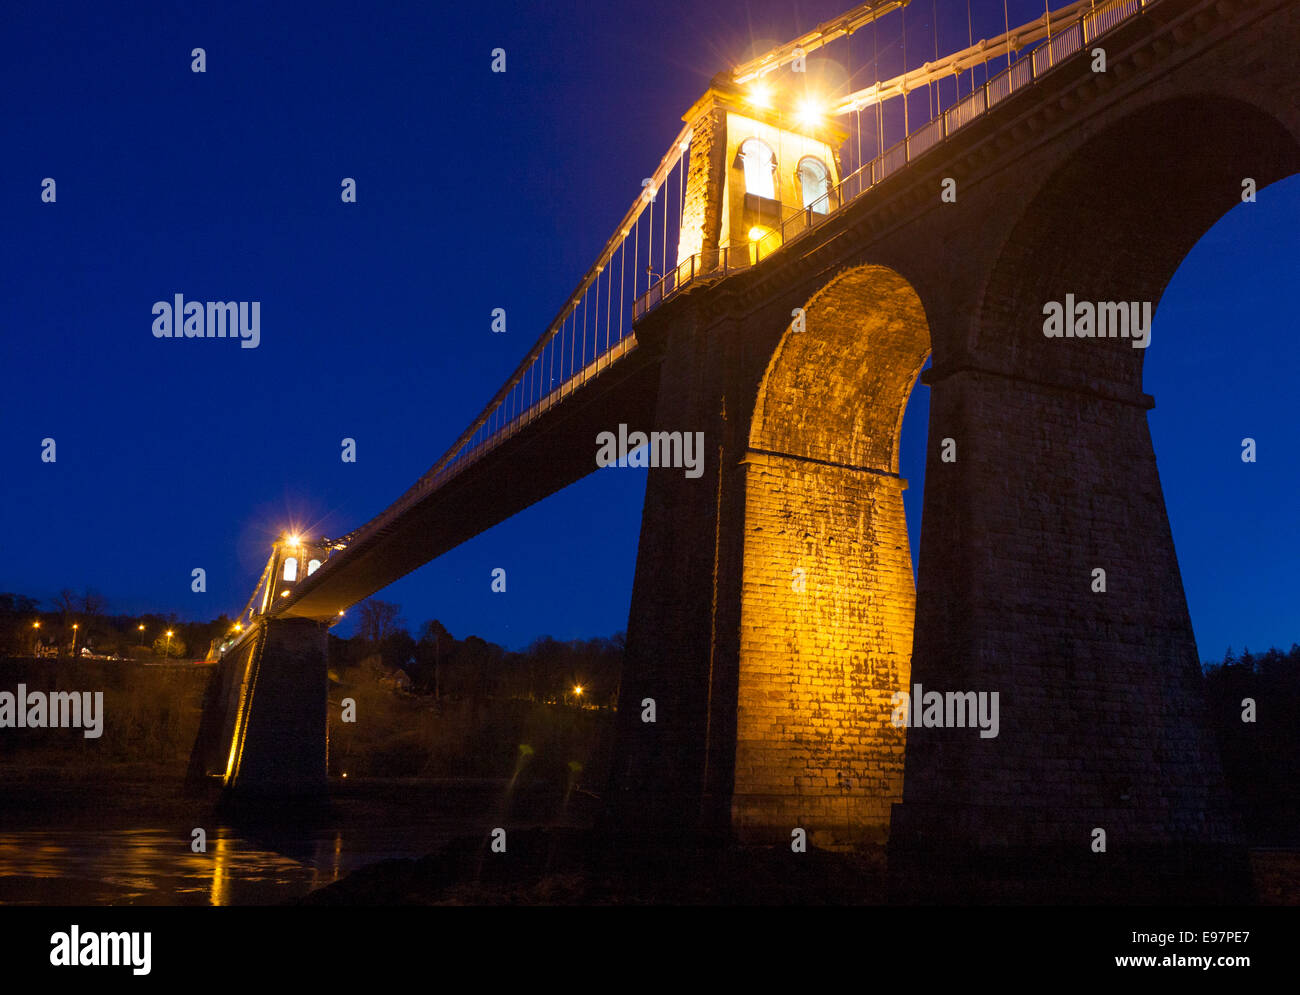 La suspension de Thomas Telford Menai Bridge at night twilight crépuscule Menai Bridge Porthaethwy Ynys Mon Anglesey au nord du Pays de Galles UK Banque D'Images